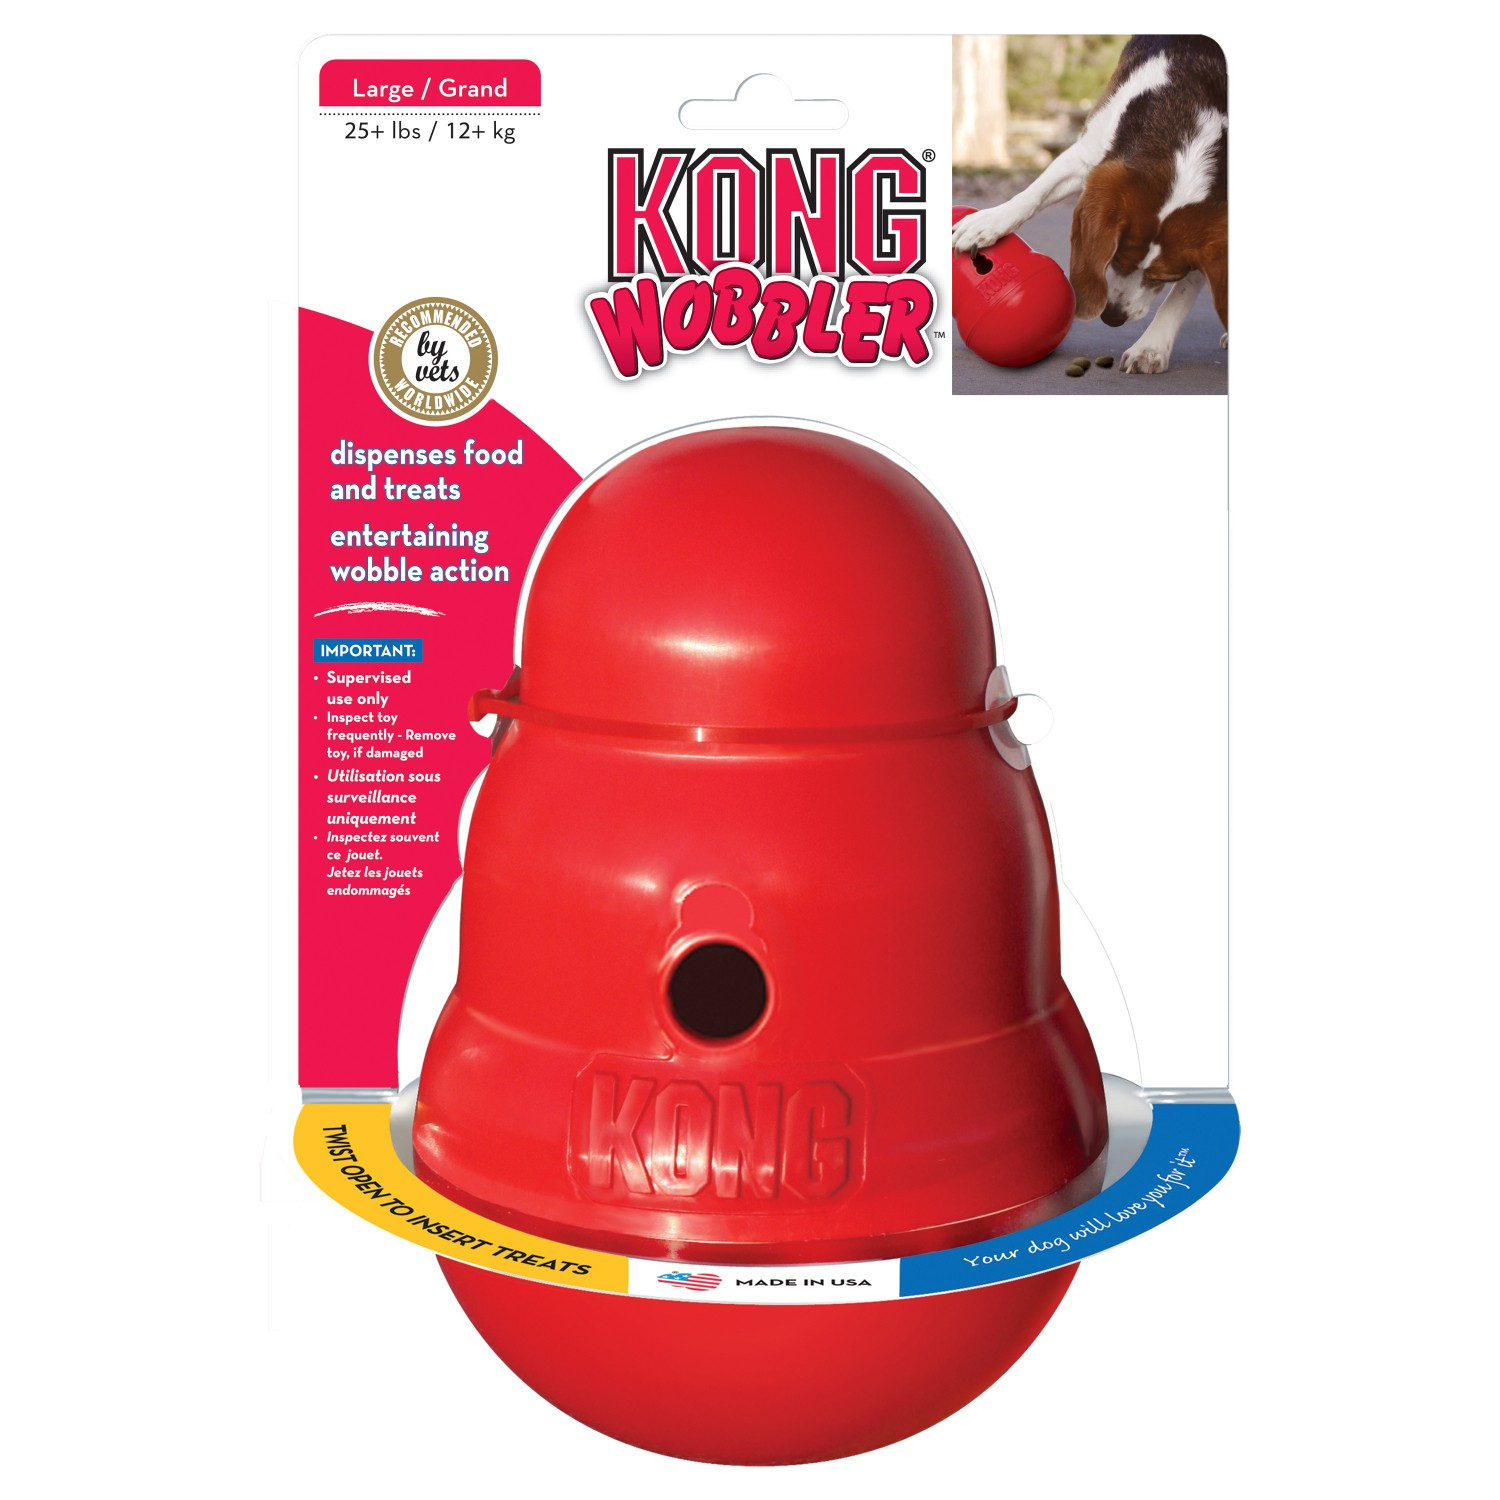 KONG cão Wobbler - distribuidor de alimentação